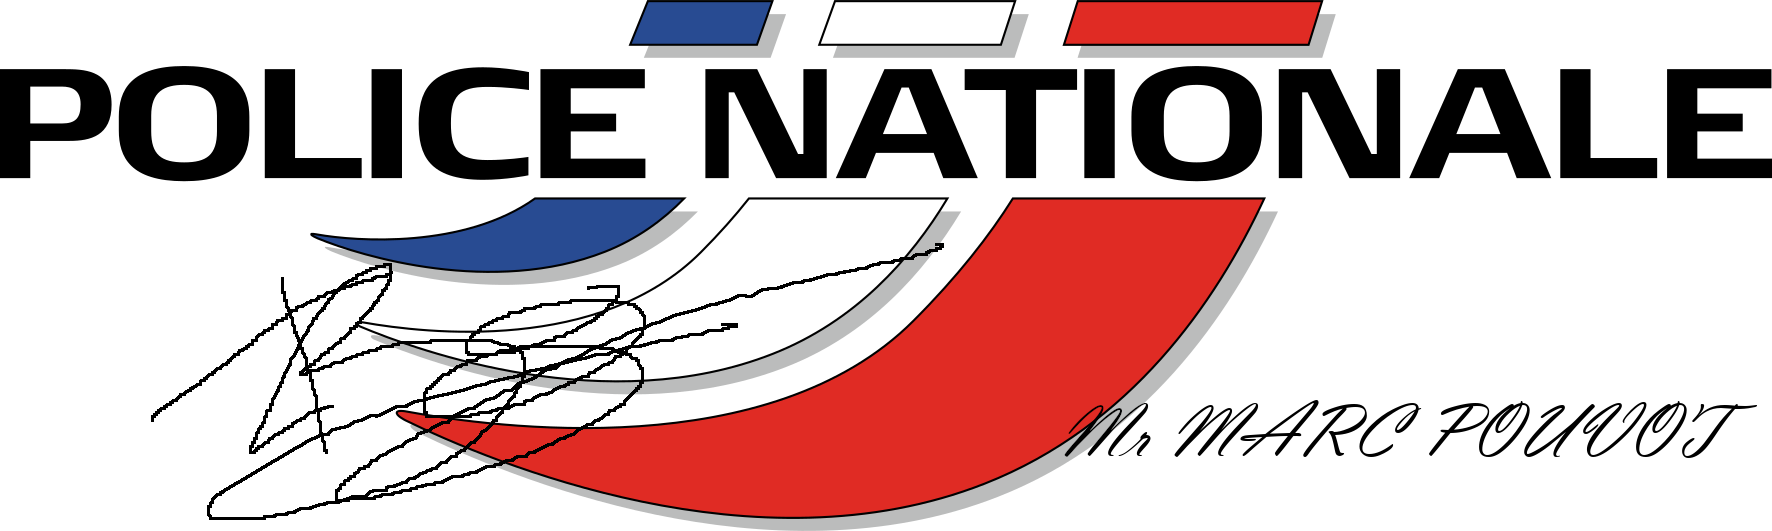 Logo-police-nationale-france (1).png